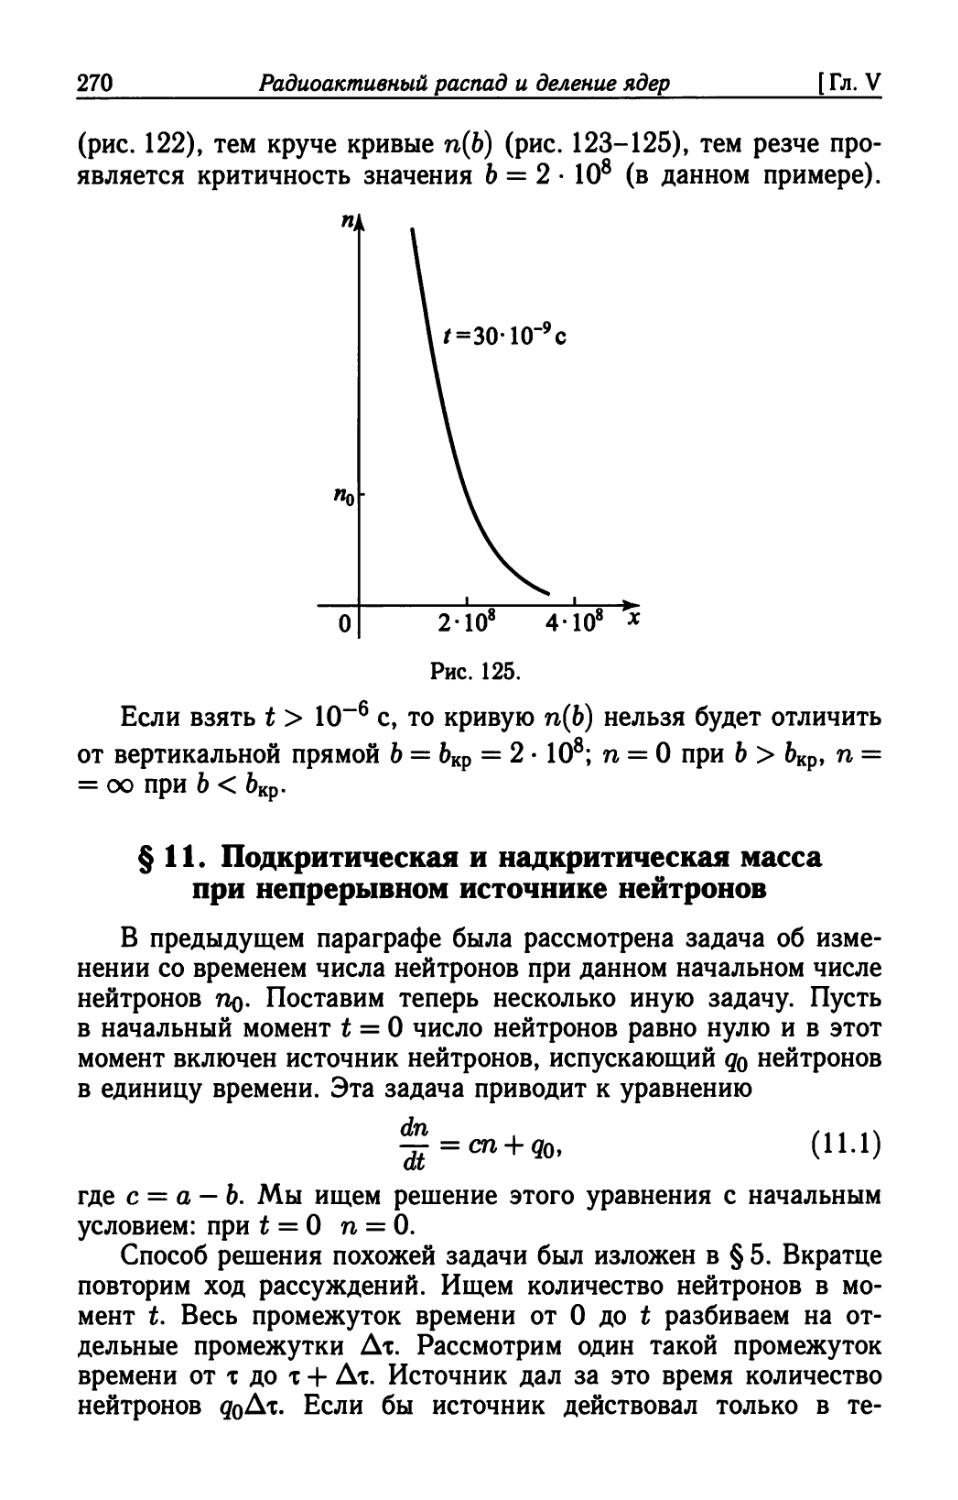 § 11. Подкритическая и надкритическая масса при непрерывном источнике нейтронов